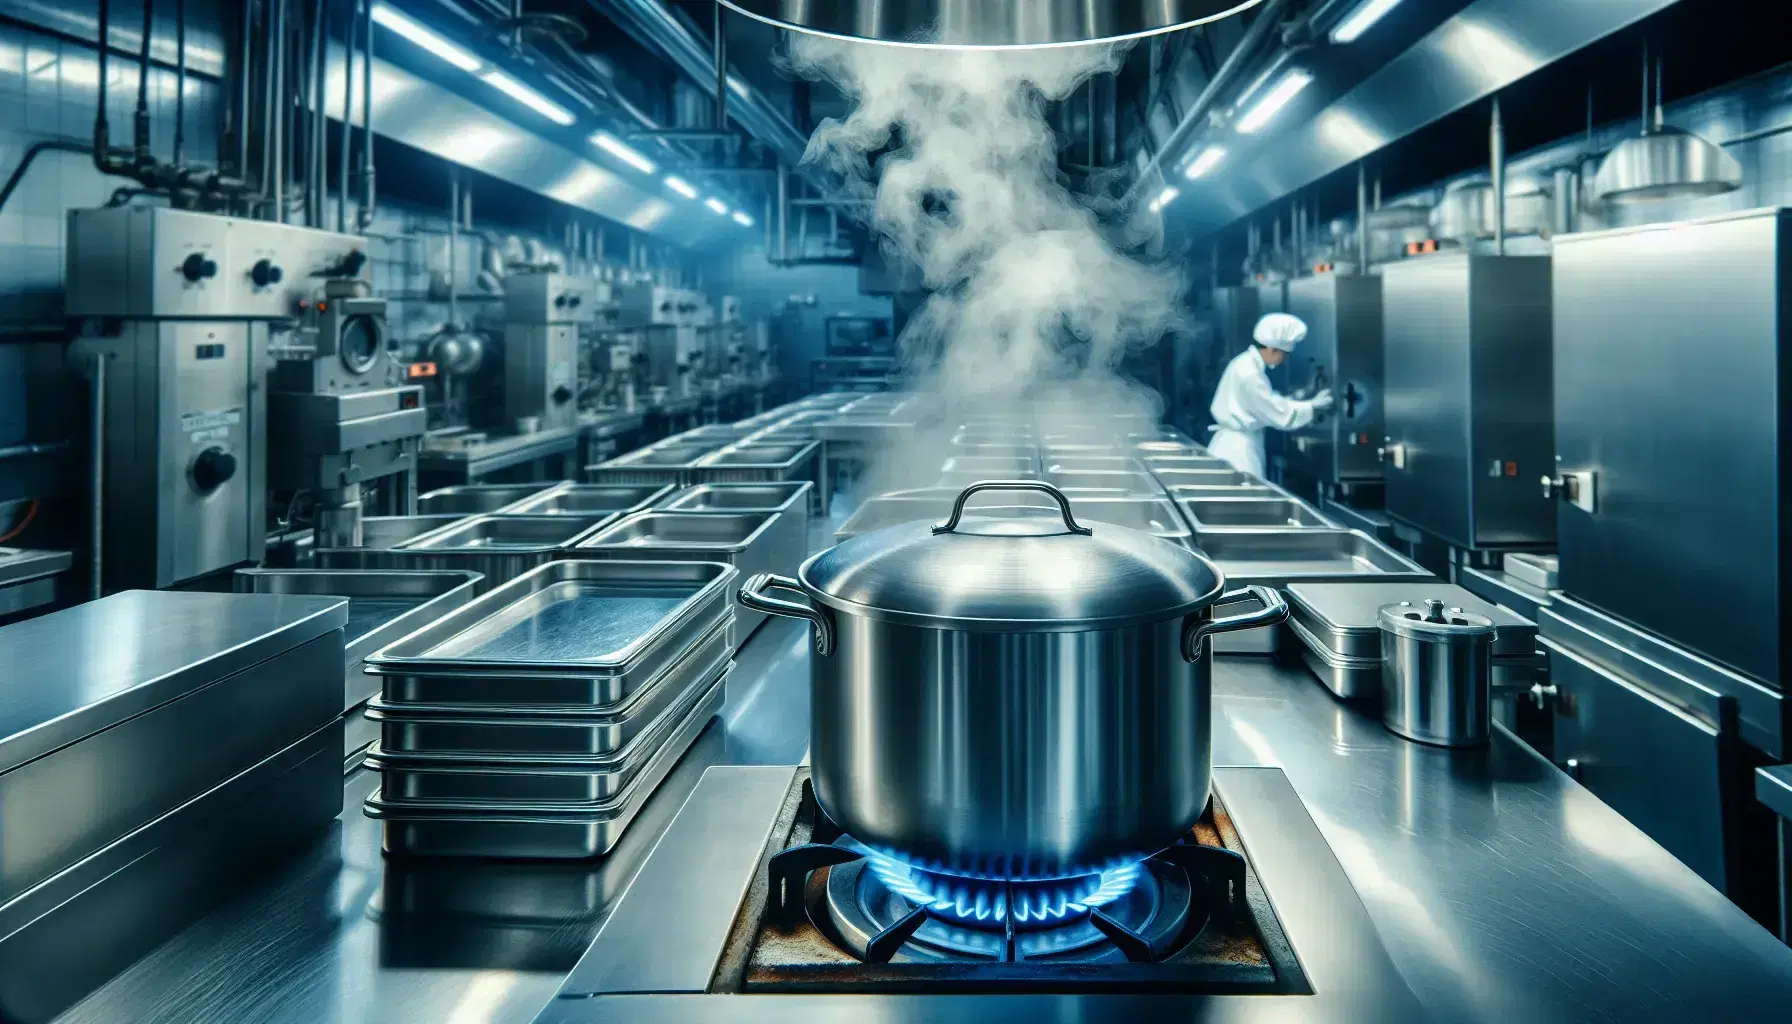 Cocina industrial con ollas de acero inoxidable sobre fogón a gas, llamas azules y chef en segundo plano.